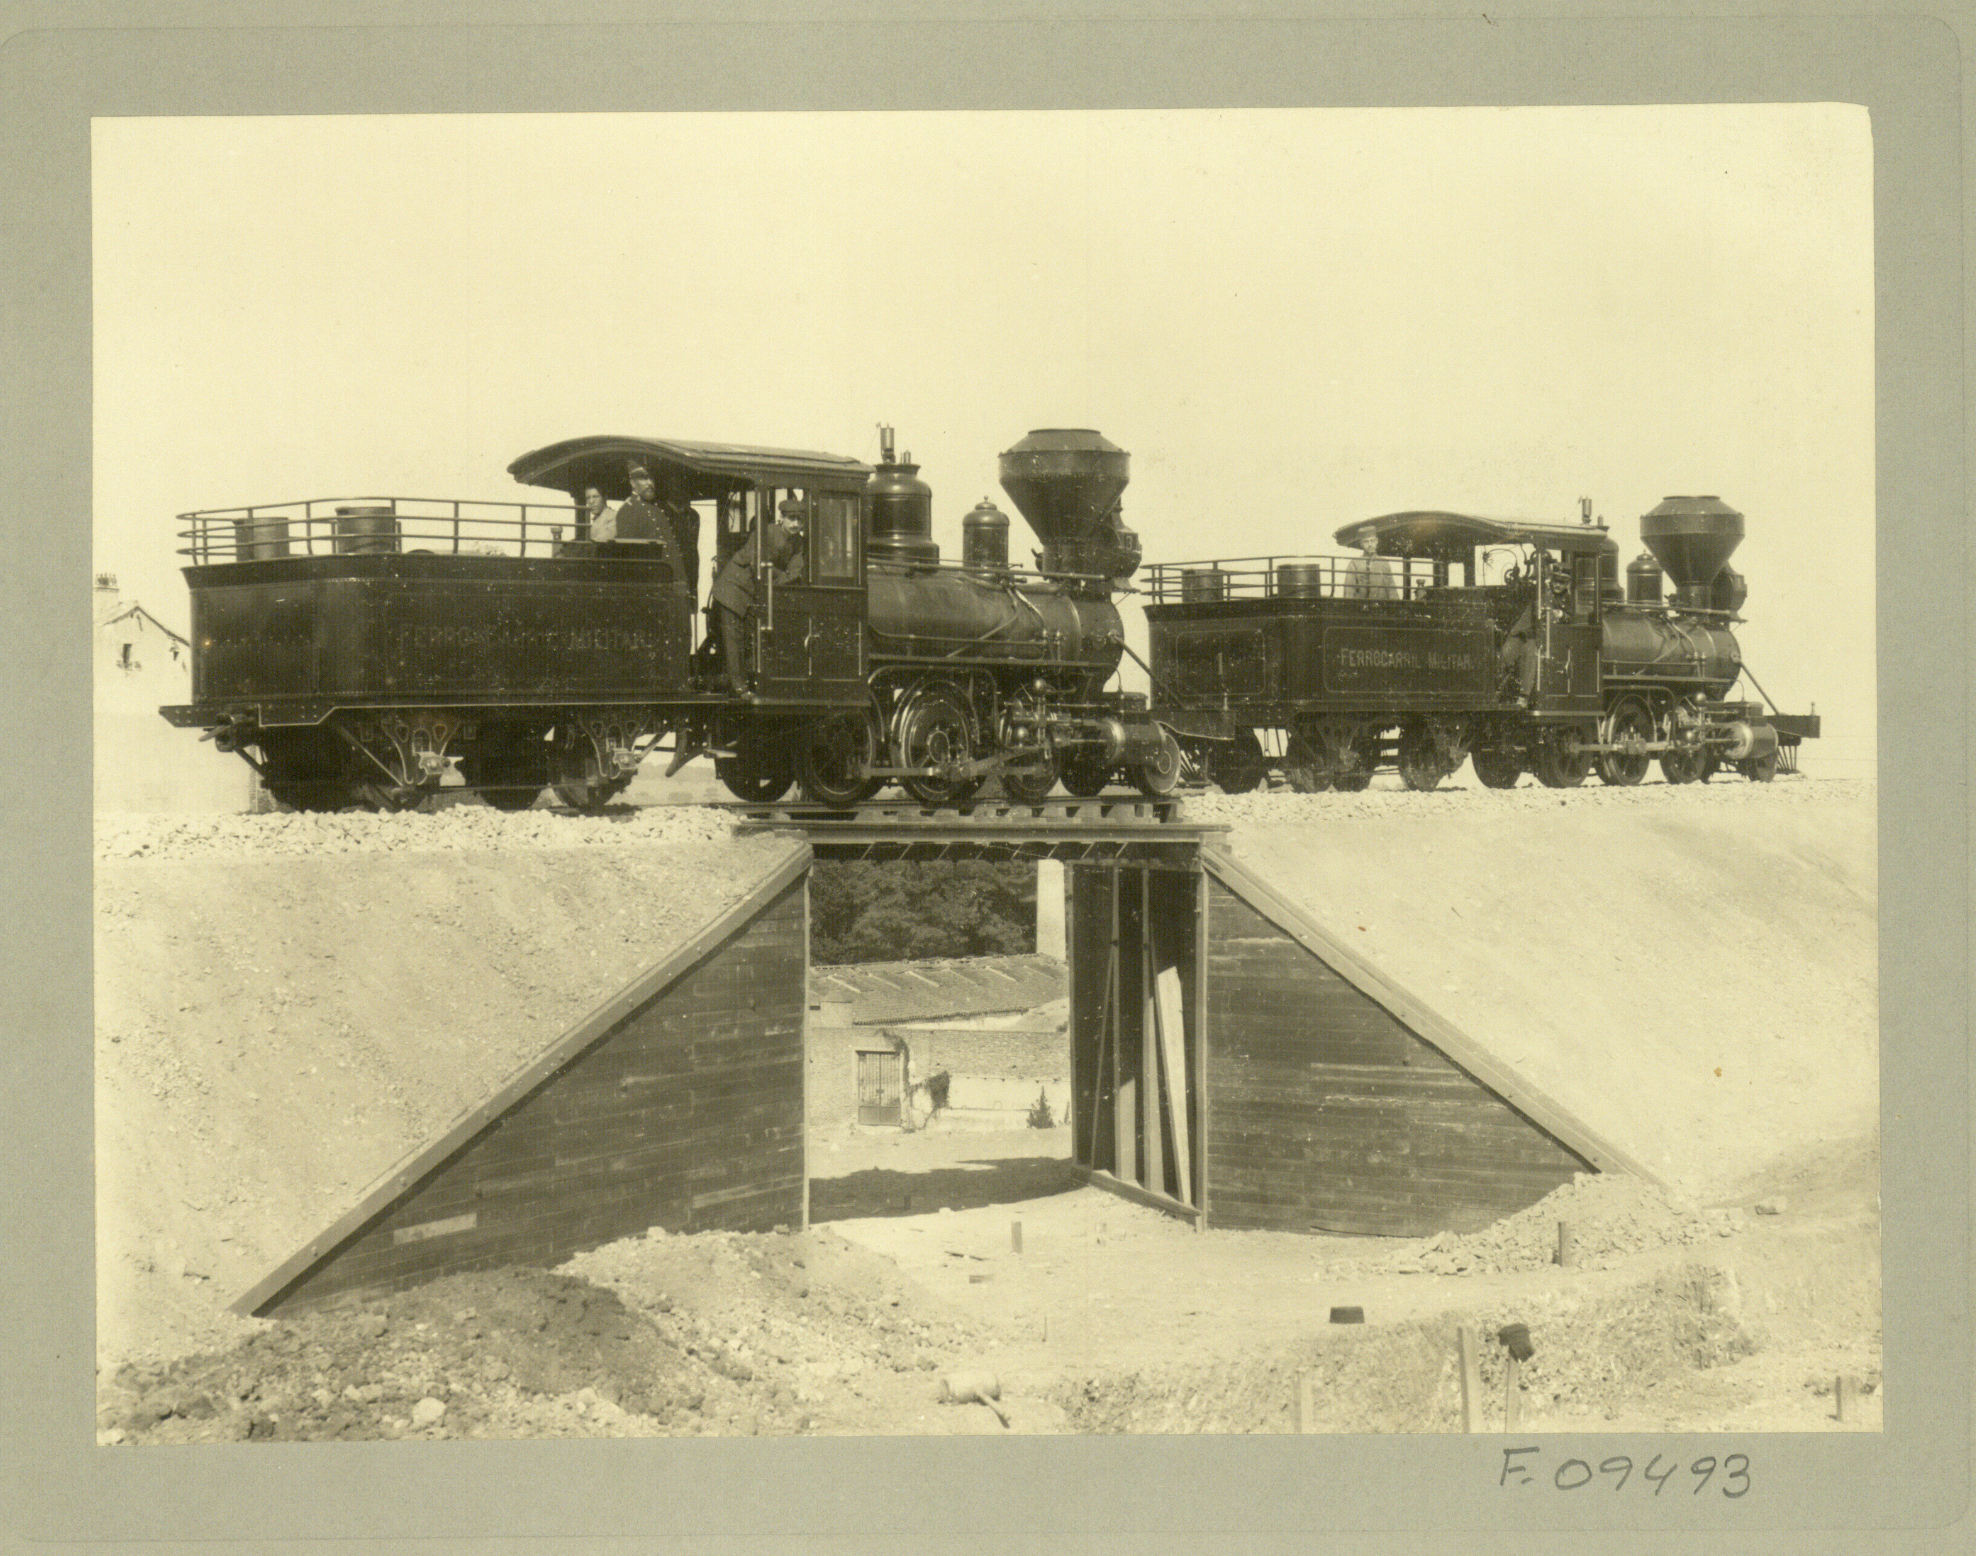 Prueba de resistencia de un puente con dos locomotores sobre él por la Escuela práctica del batallón de ferrocarriles. 1901